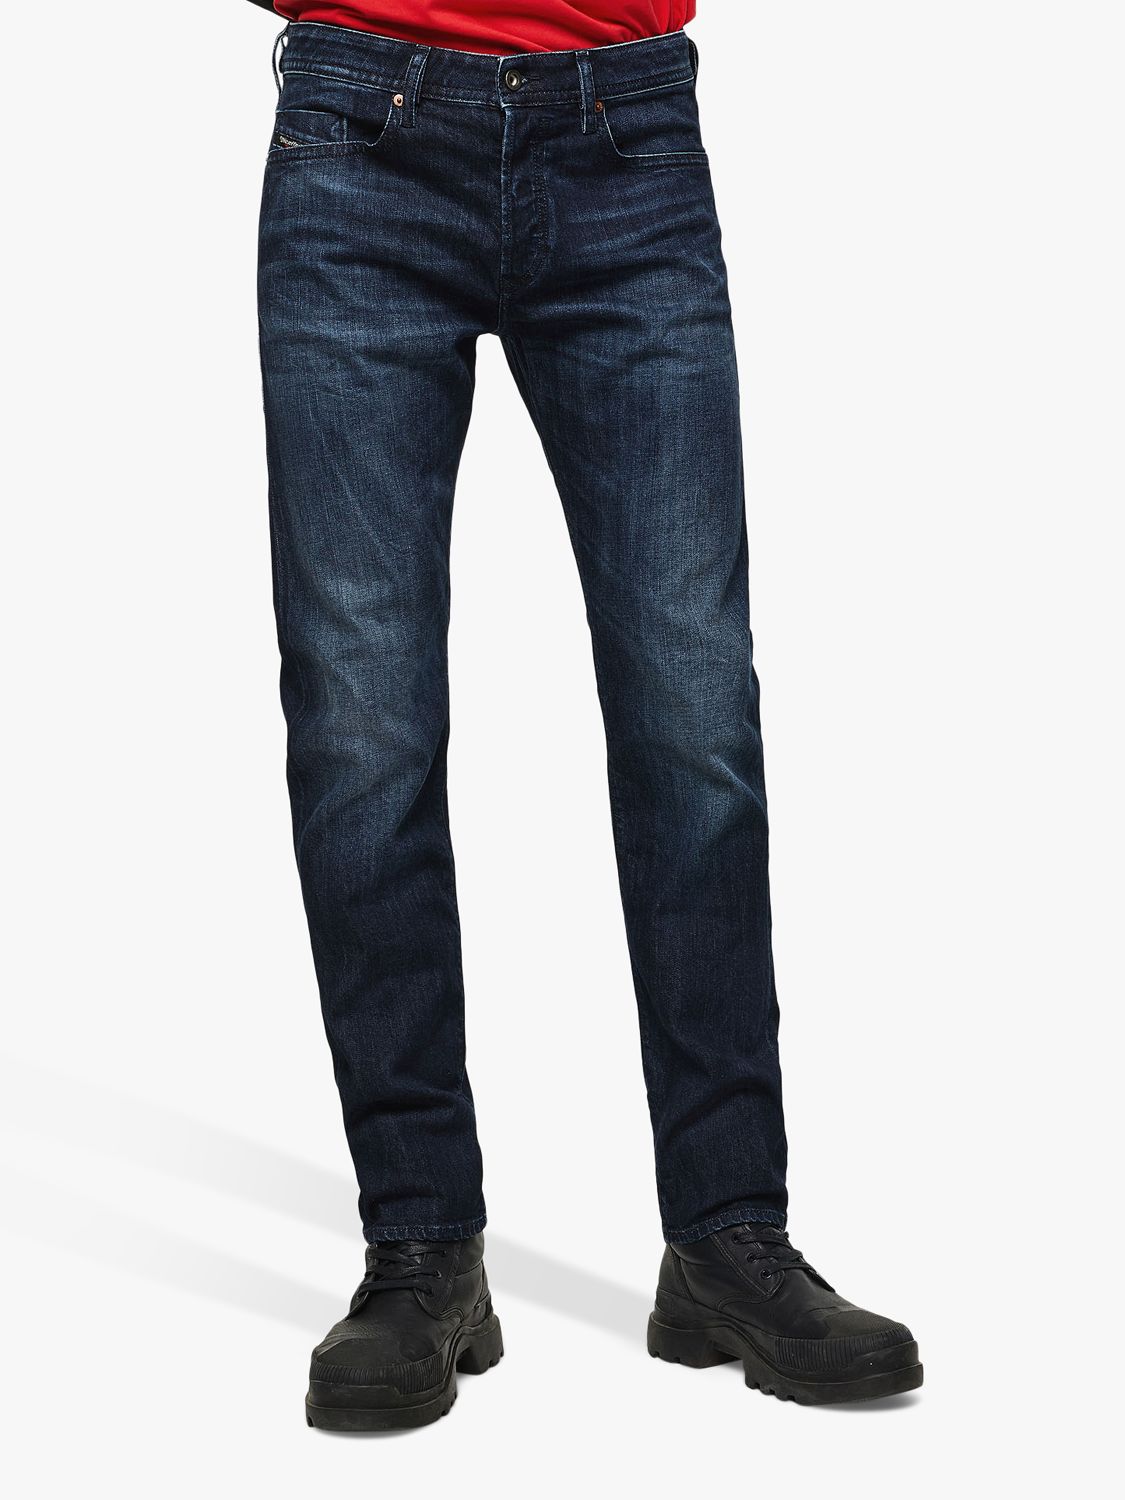 Diesel Buster Slim Jeans, Dark Grey 0095W